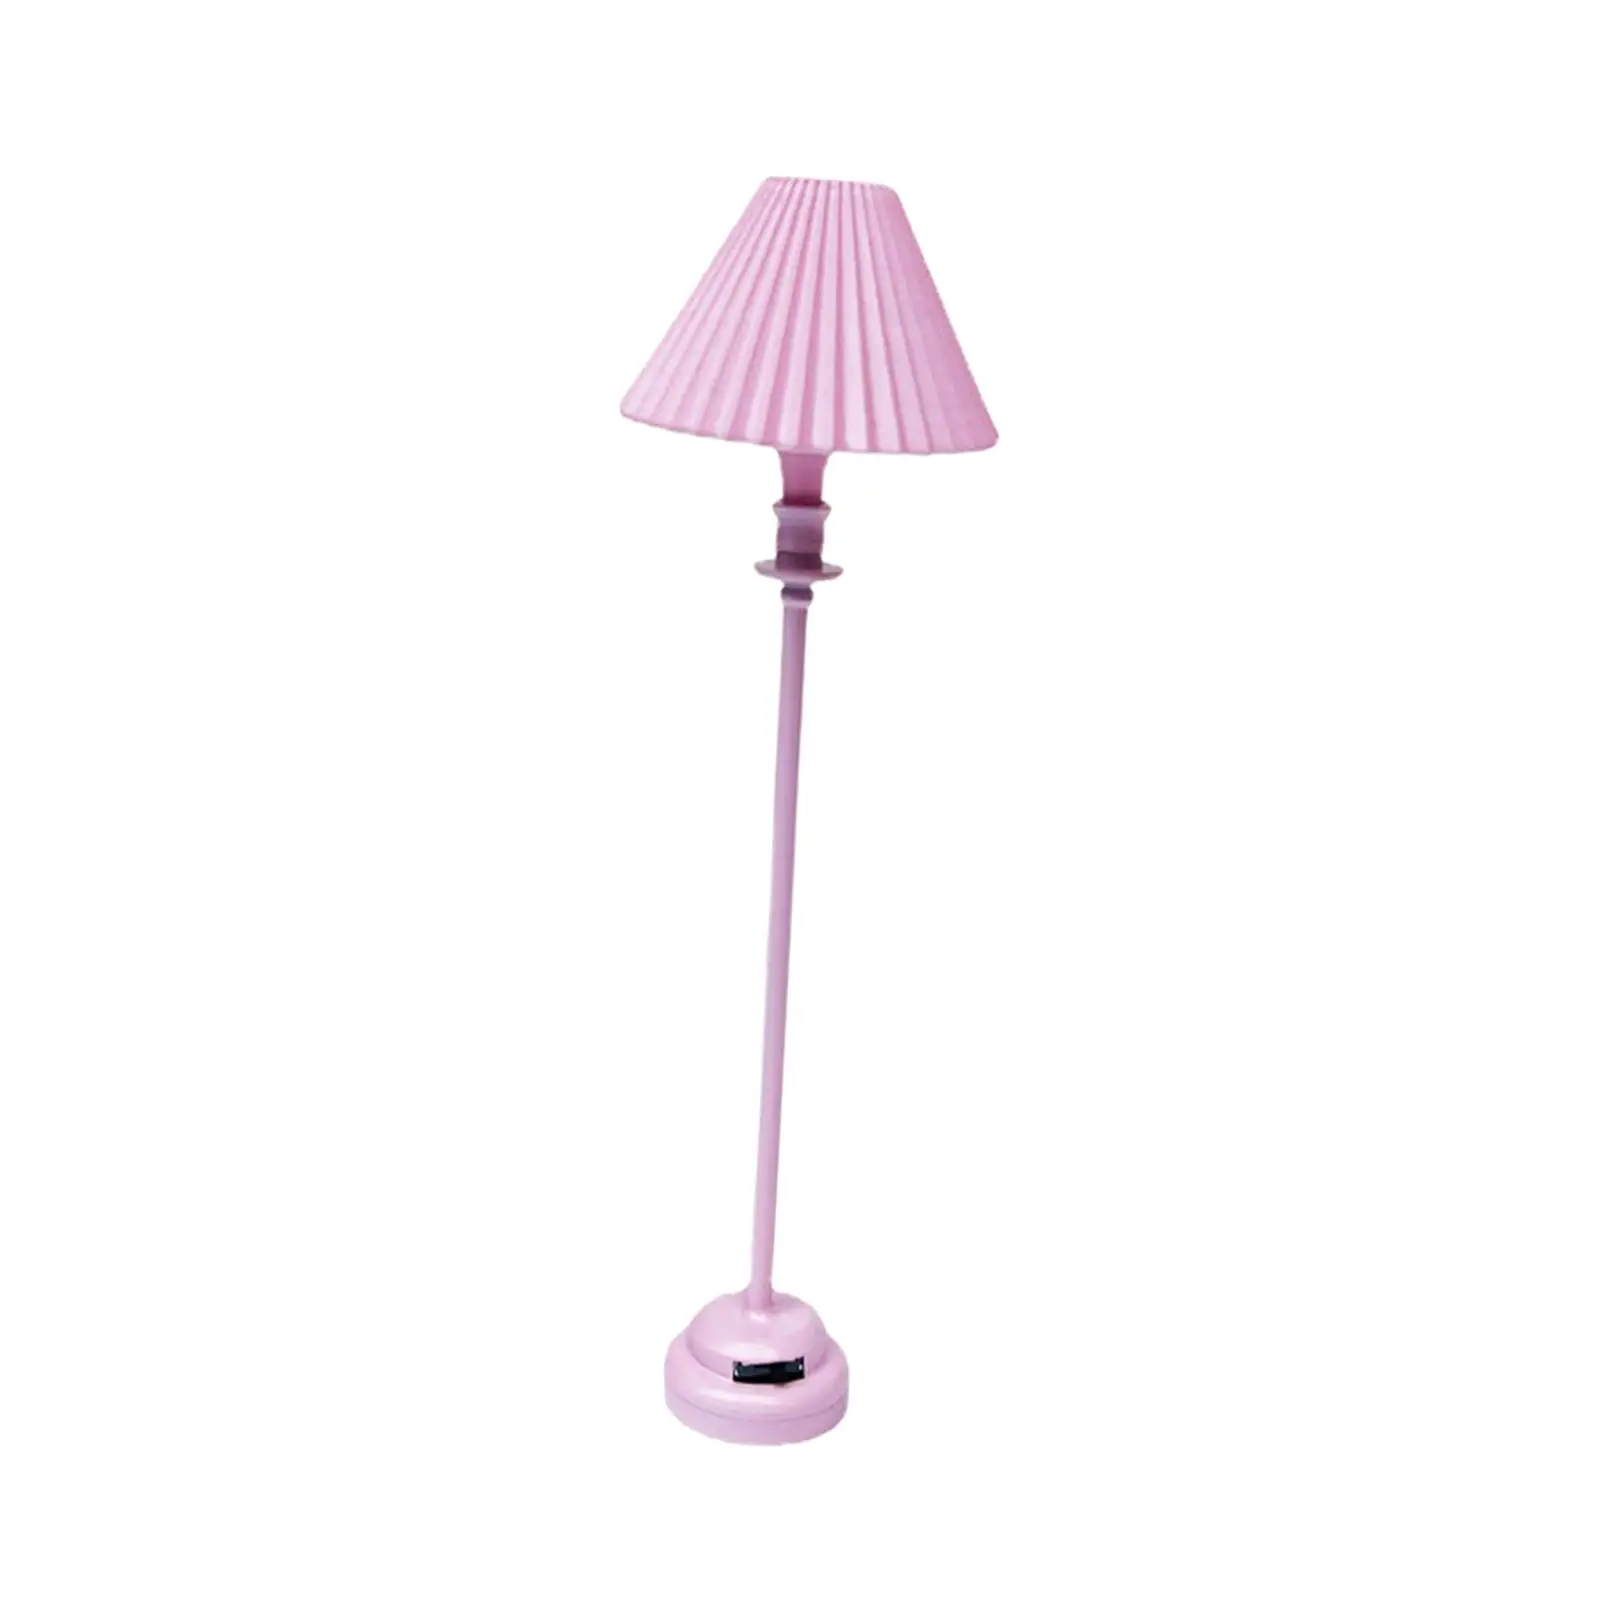 1/12 Mini Dollhouse Floor Lamp Decorative for Dolls House Room Decor